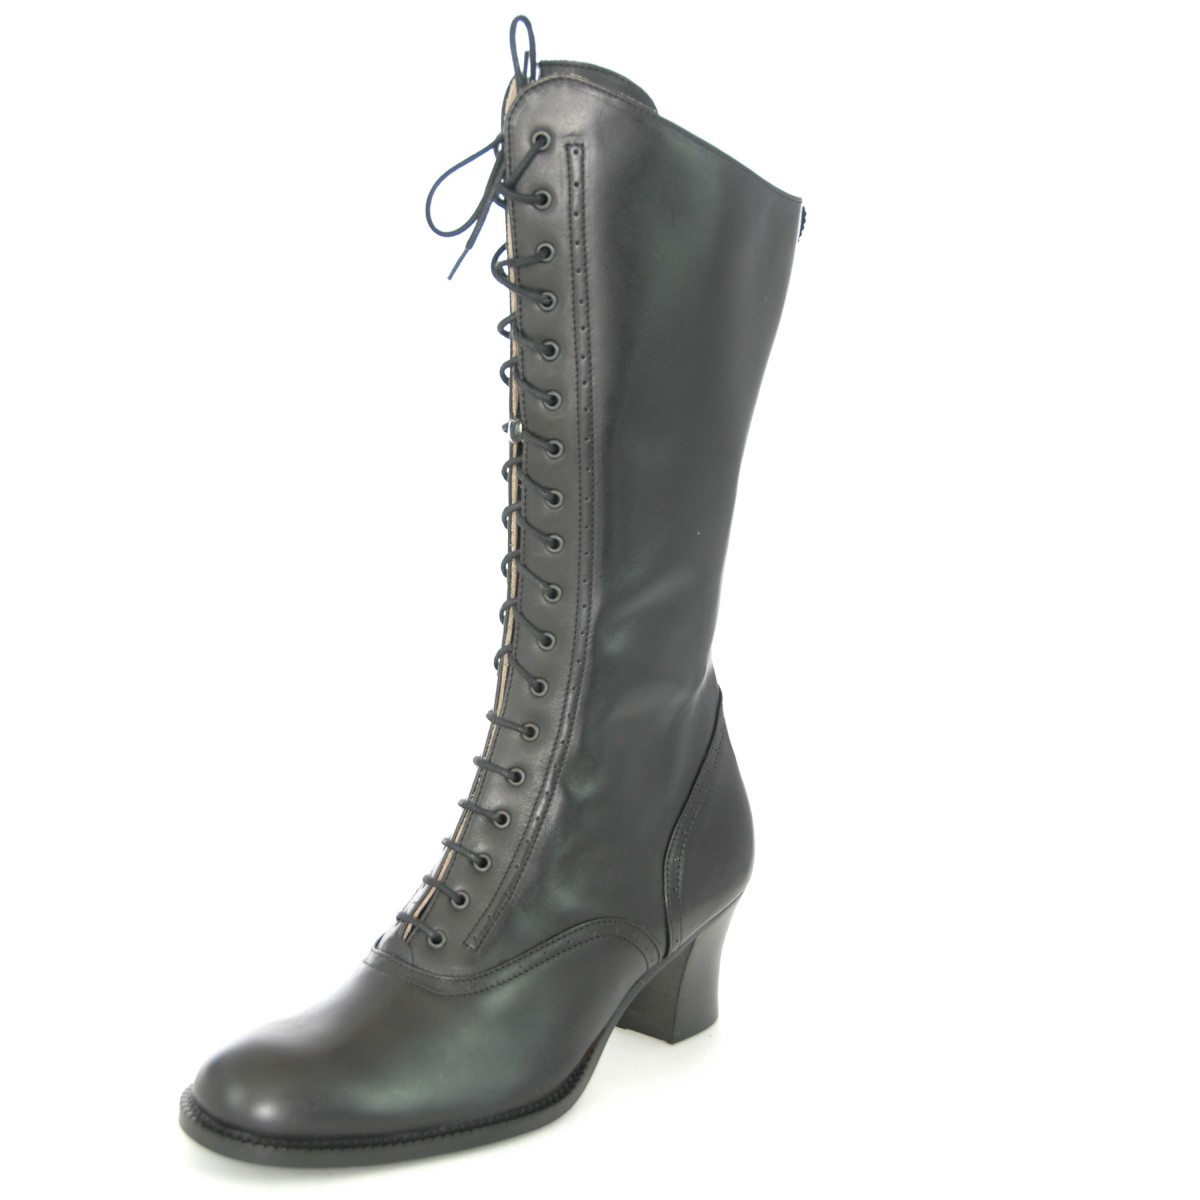 Glattleder Stiefel in schwarz von Dirndl + Bua | eBay